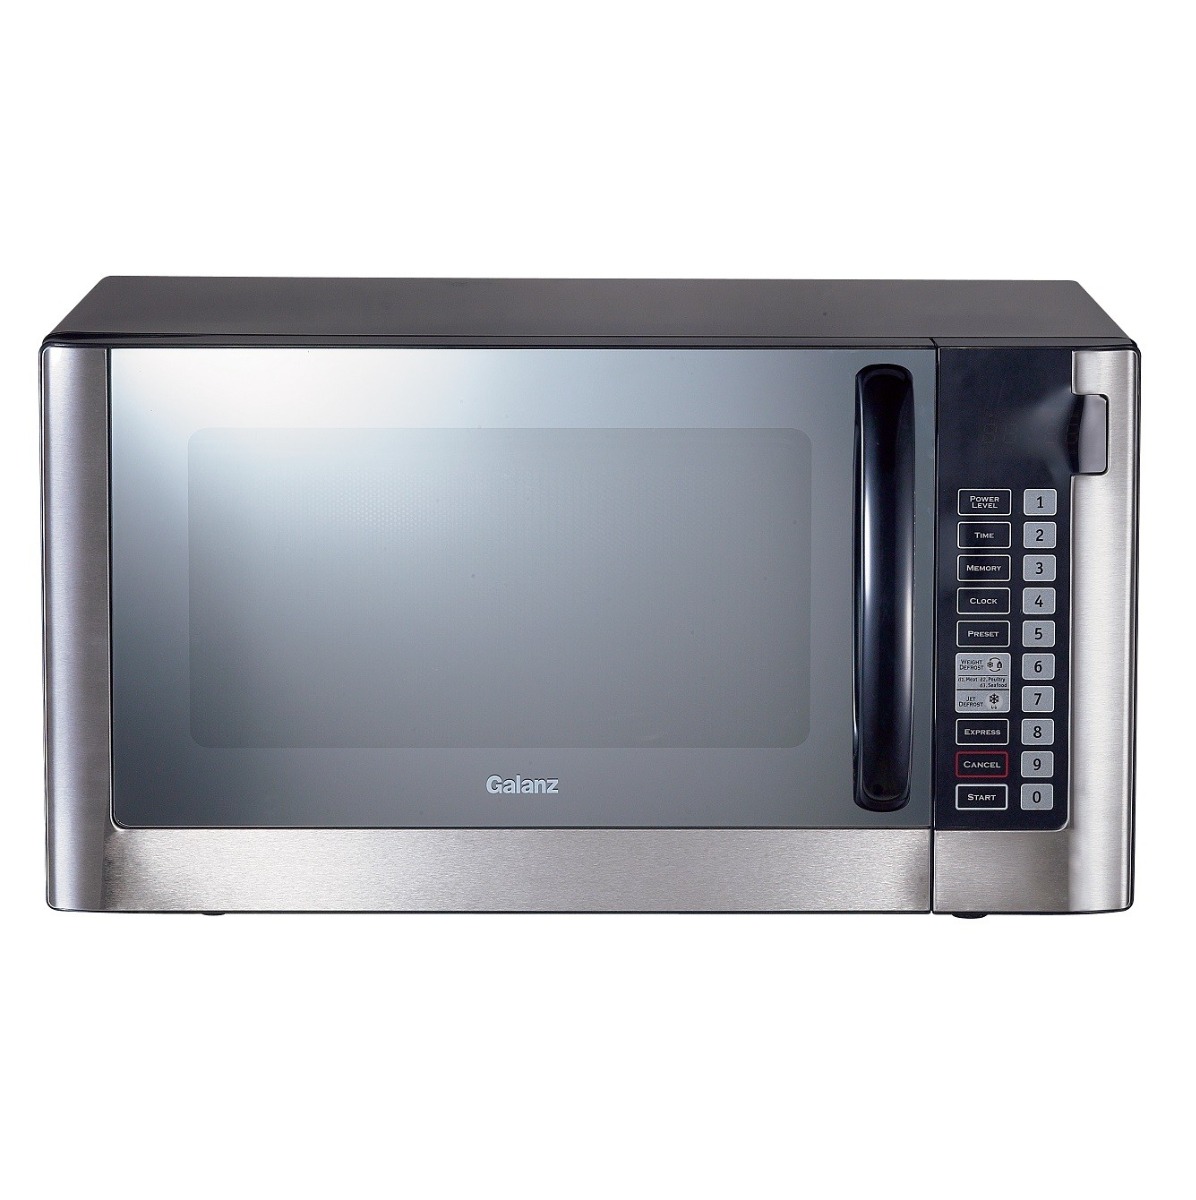 Galanz Microwave, 38 L, 1000 W, solo + grill, digital control, silver, D100N38AL-G6